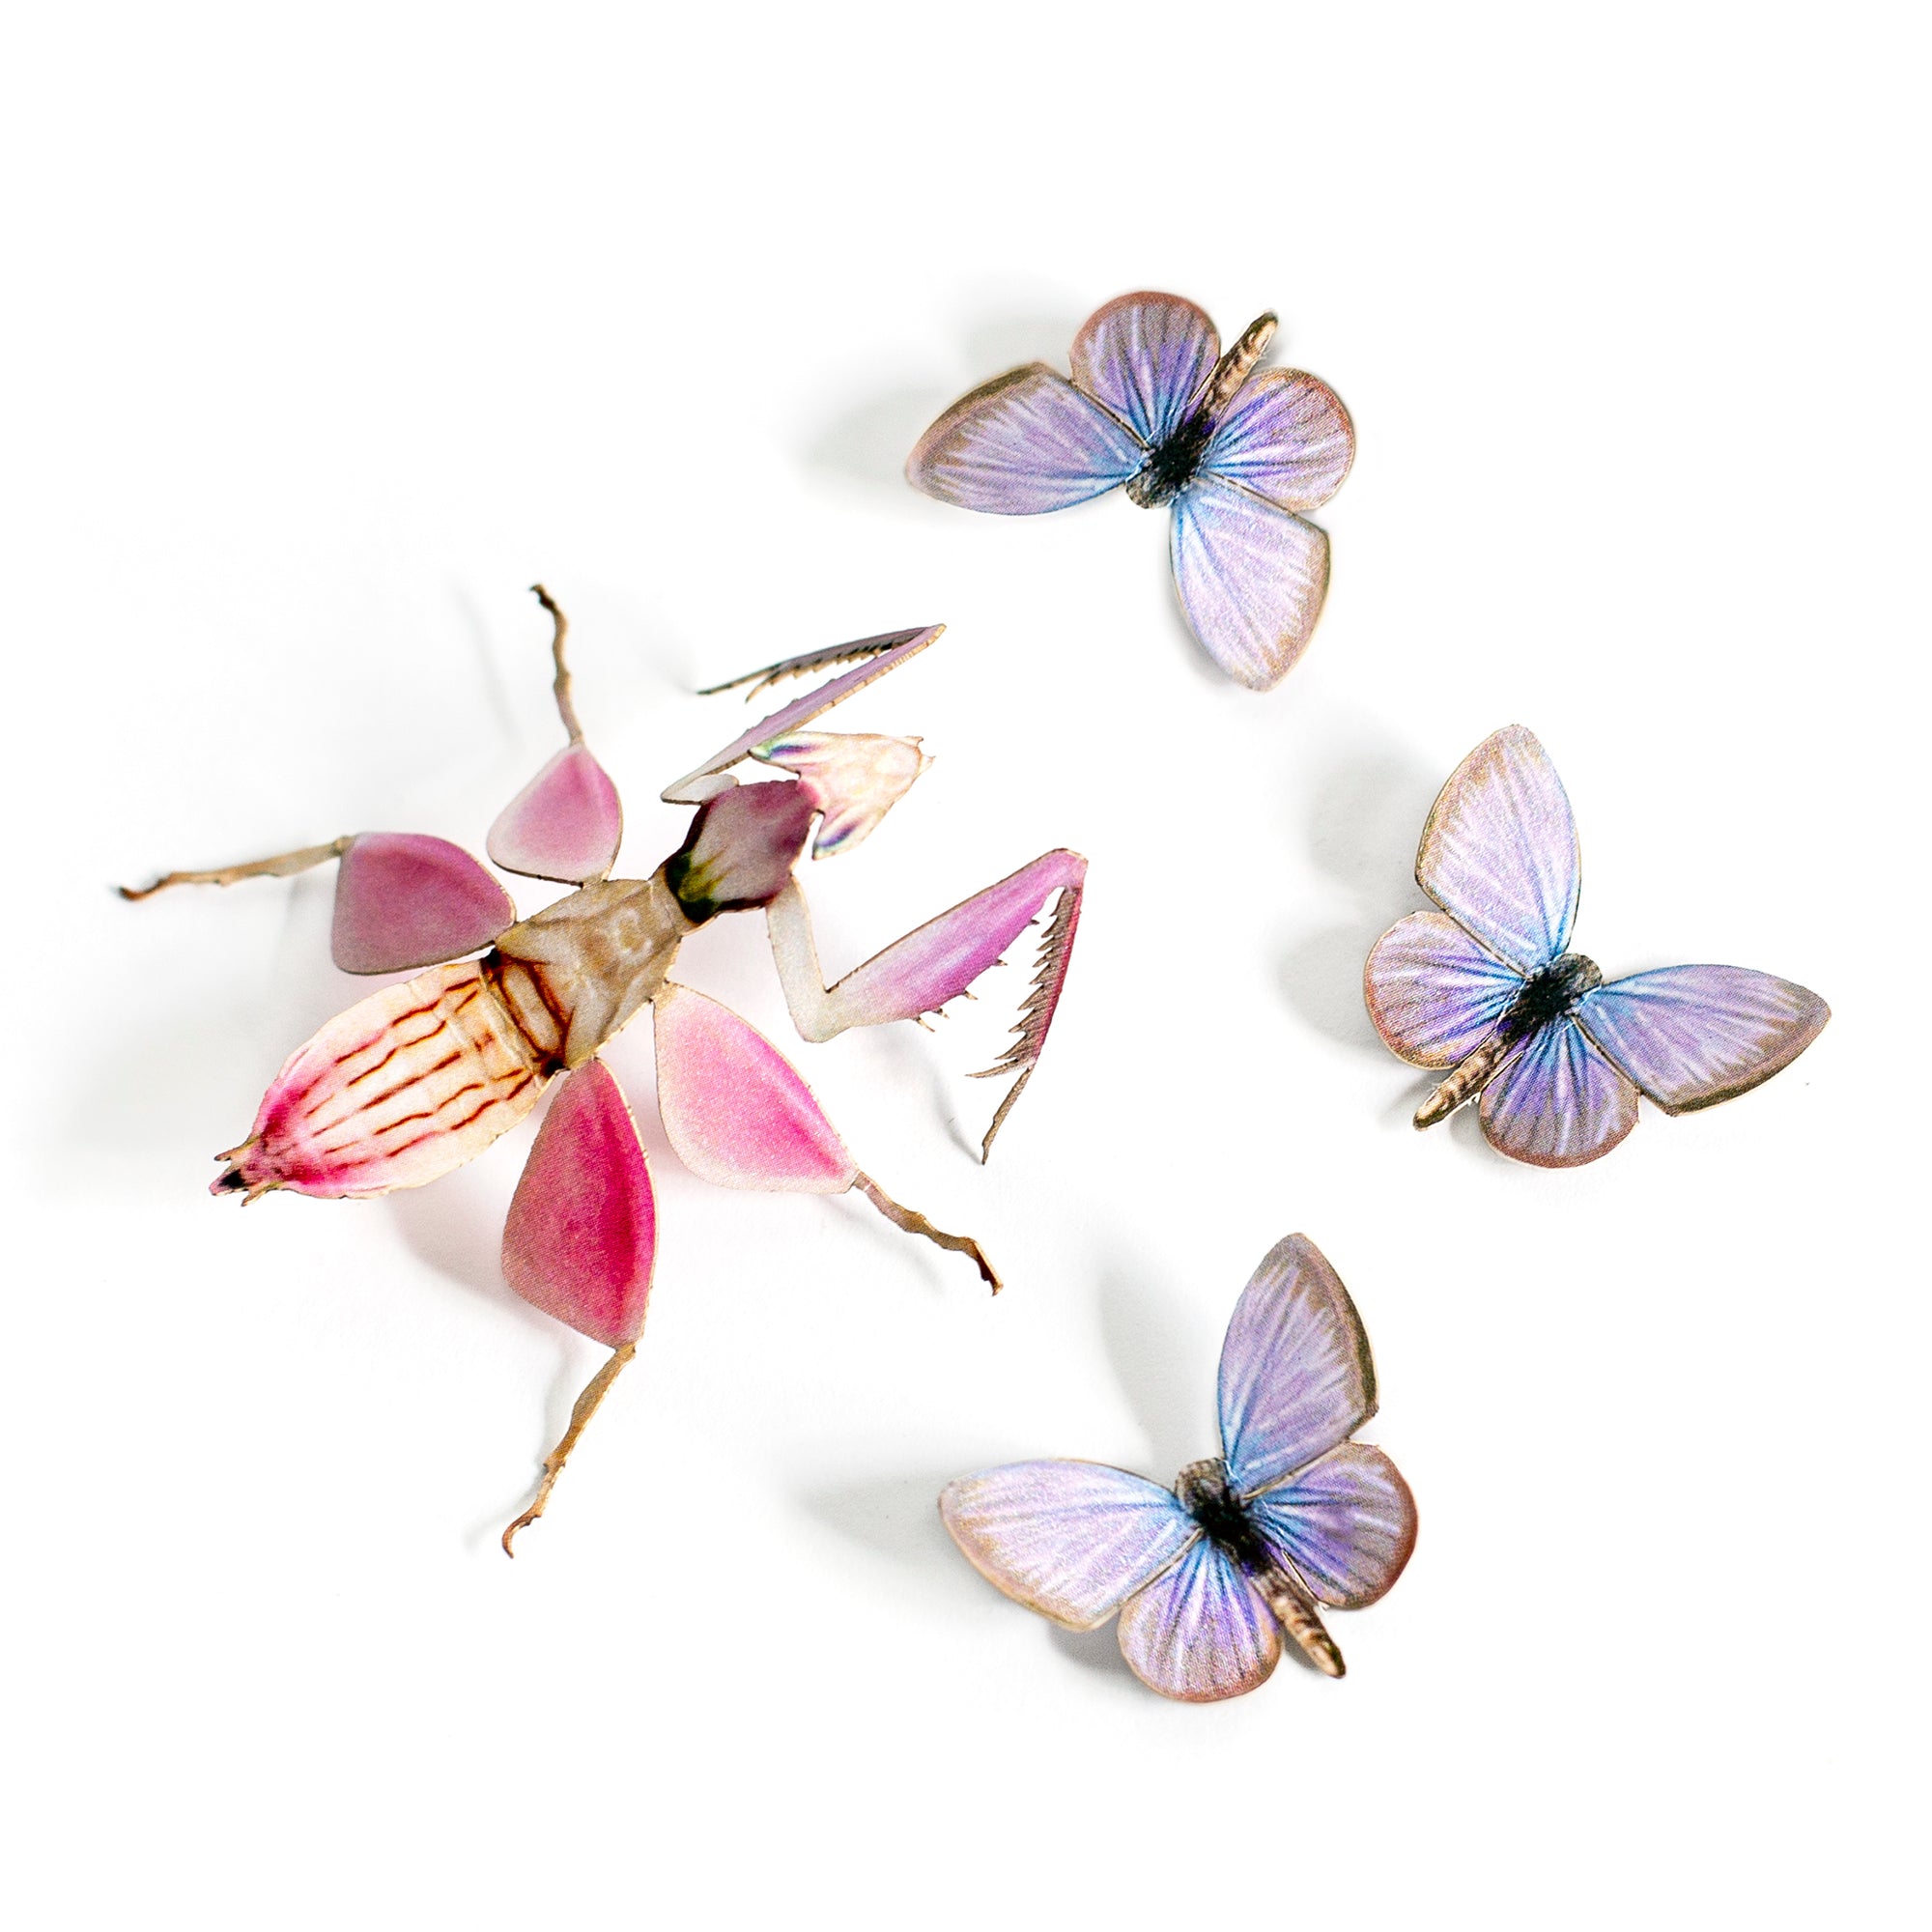 'Orchid' Mantis Set Artist Wholesale